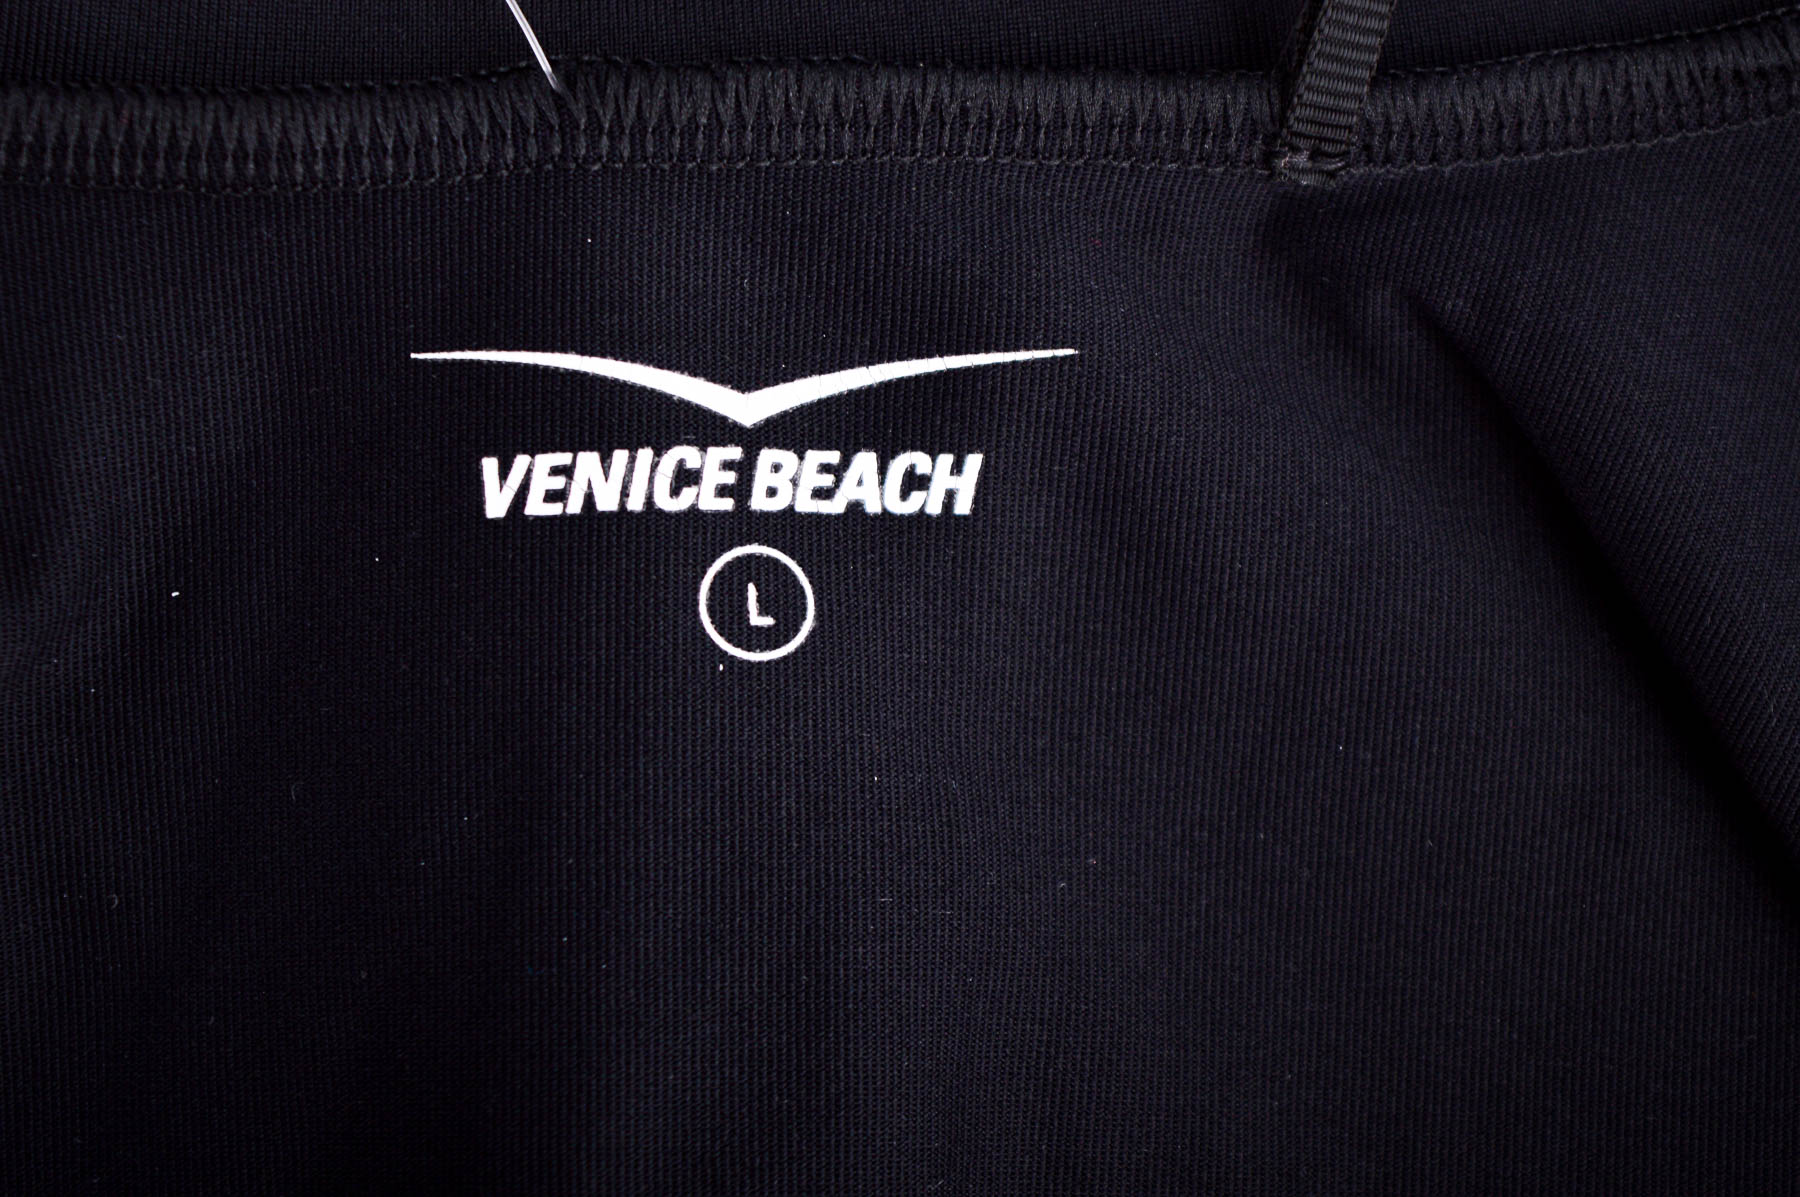 Damski top sportowy - Venice Beach - 2